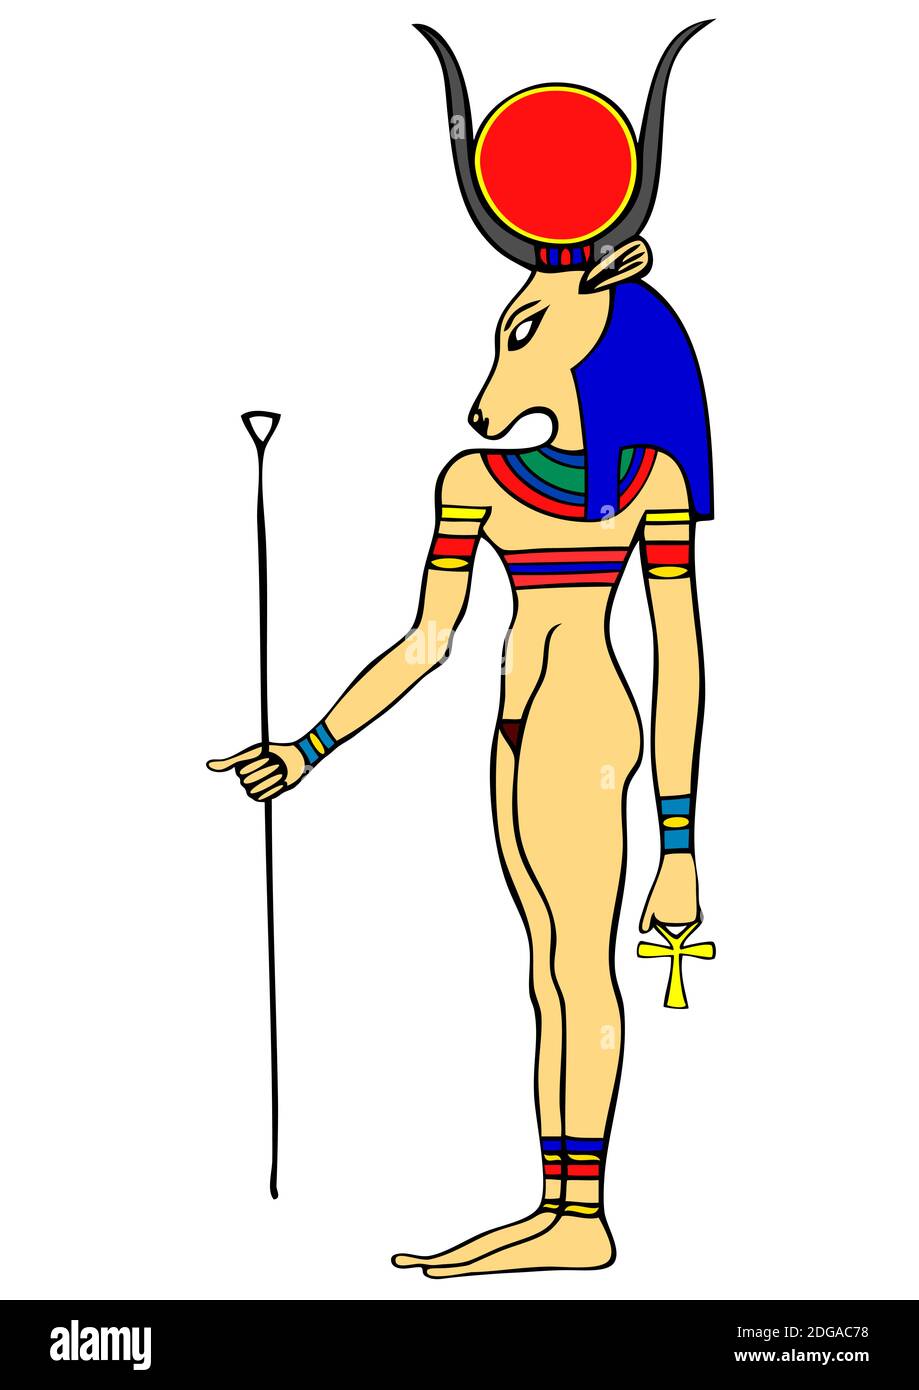 God of Ancient Egypt - Hathor - Hethert - among the oldest of Egyptian deities Stock Photo